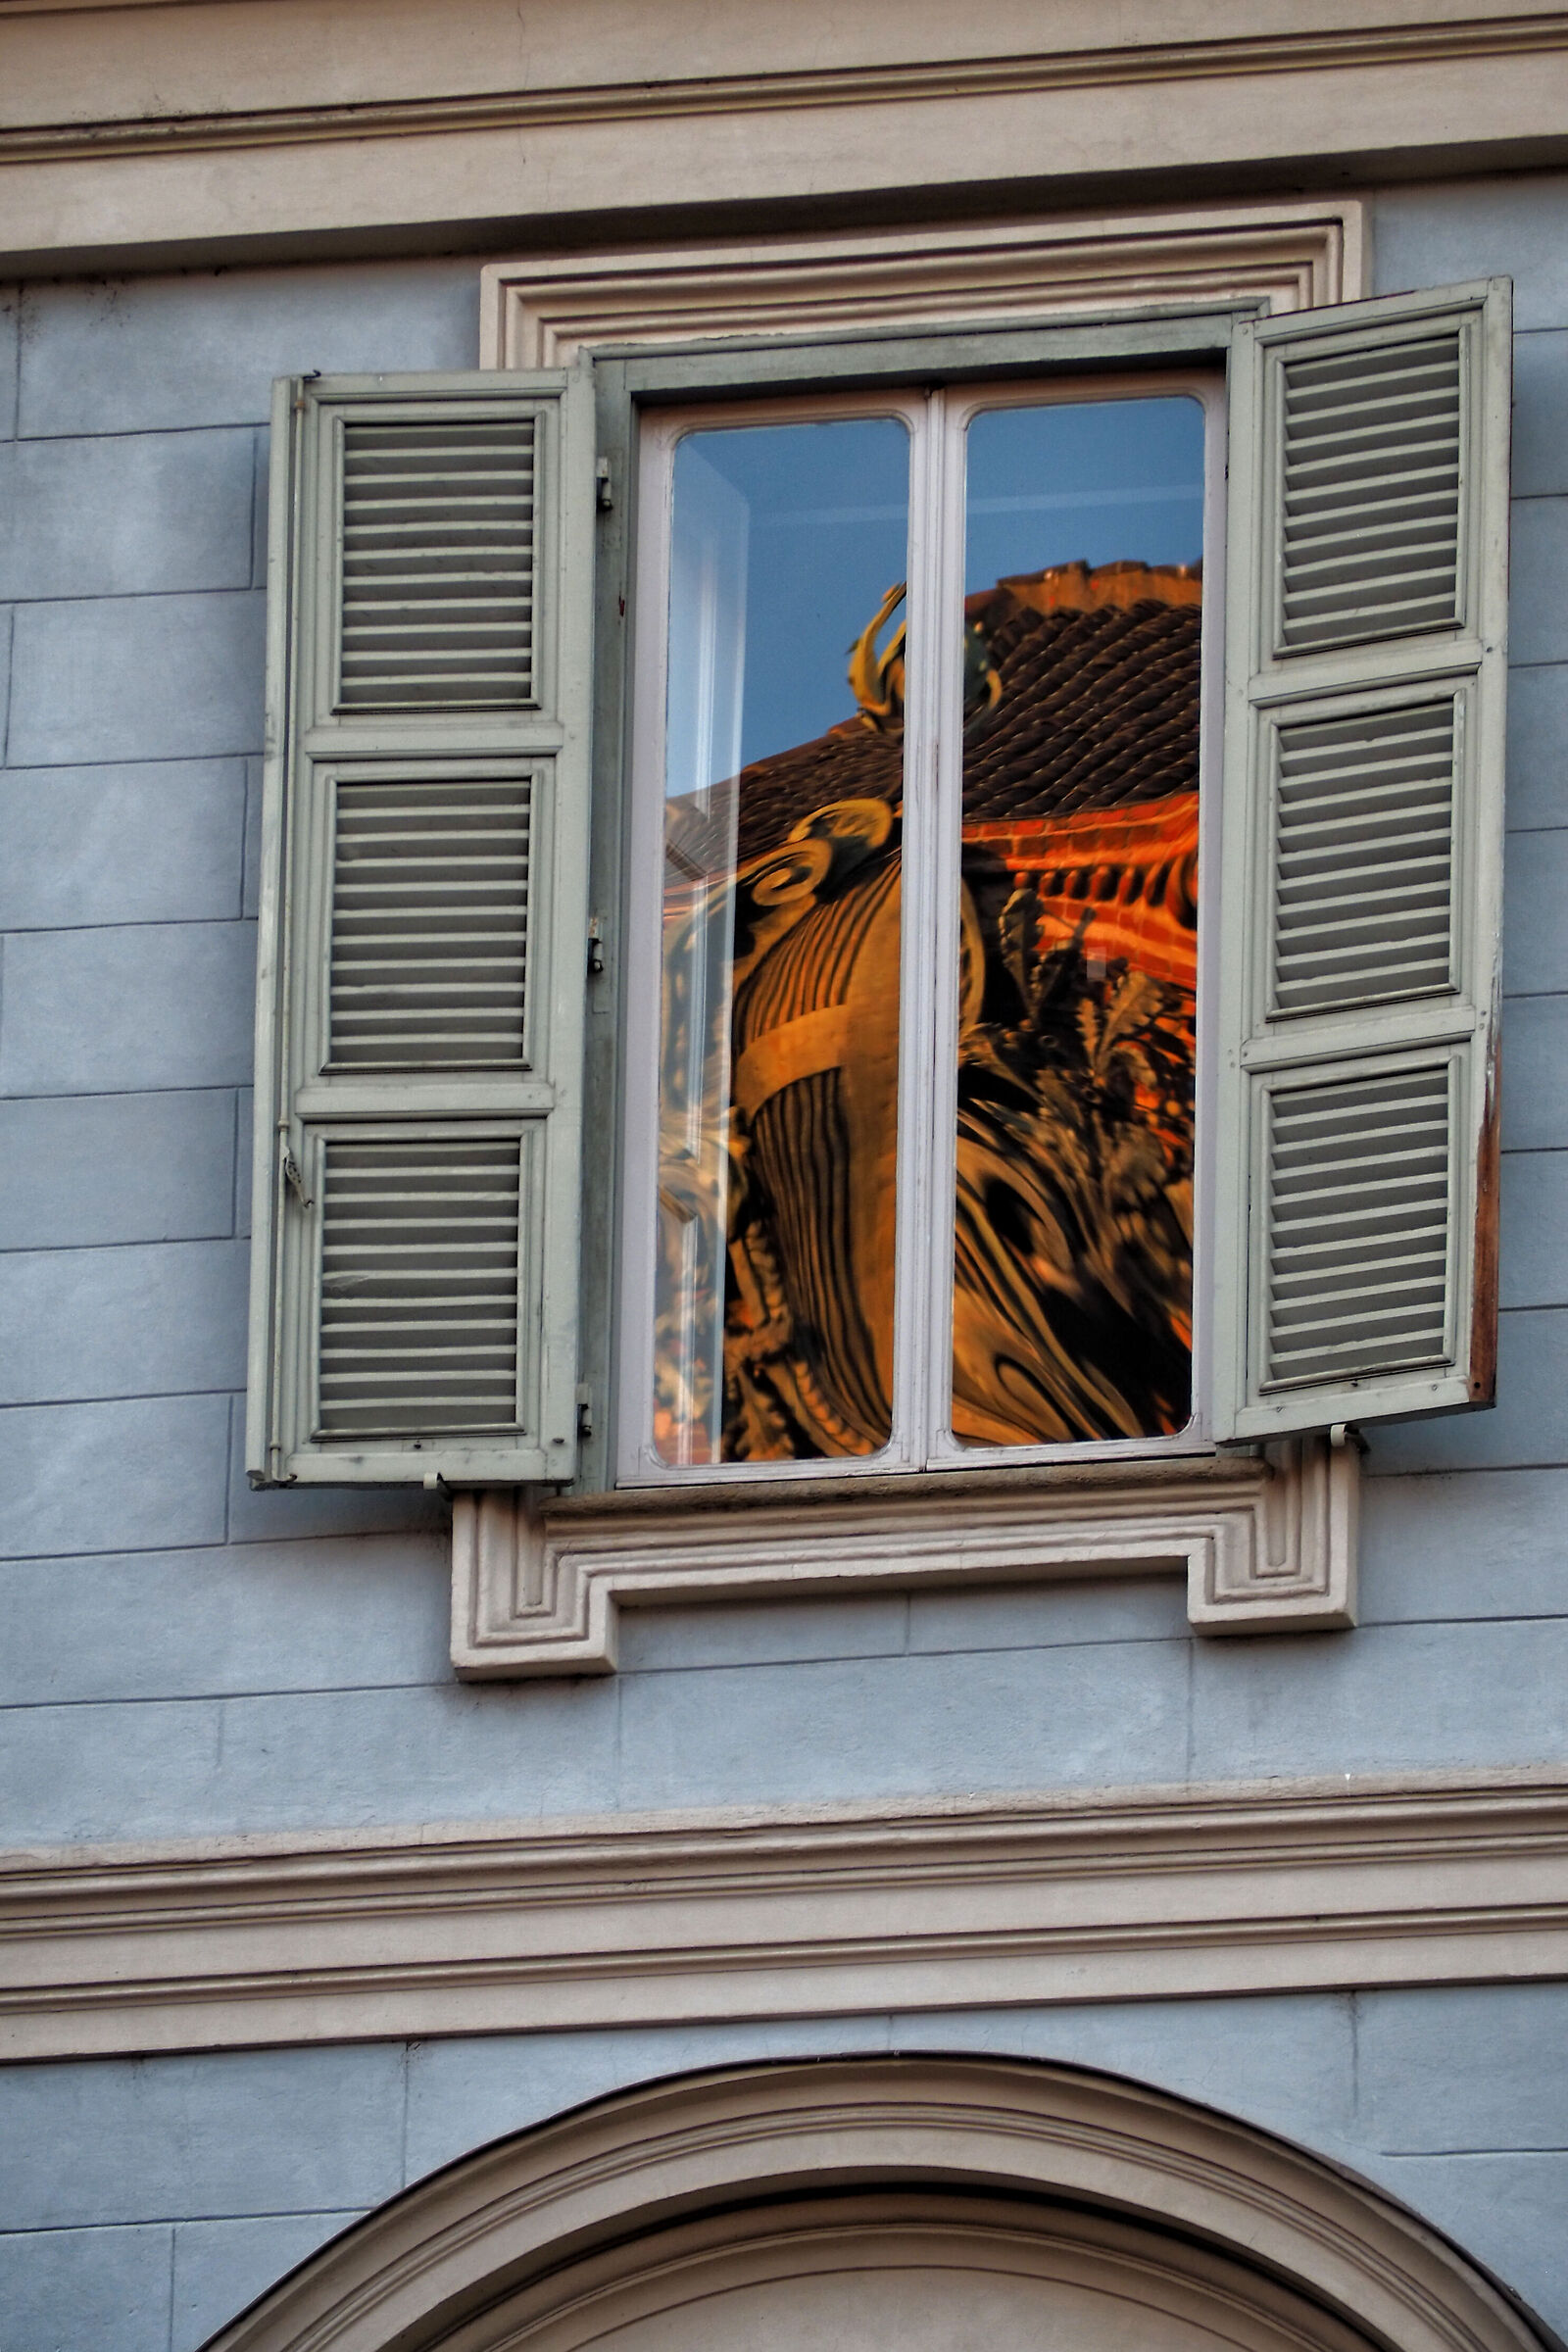 Palazzo Carignano dalla finestra......